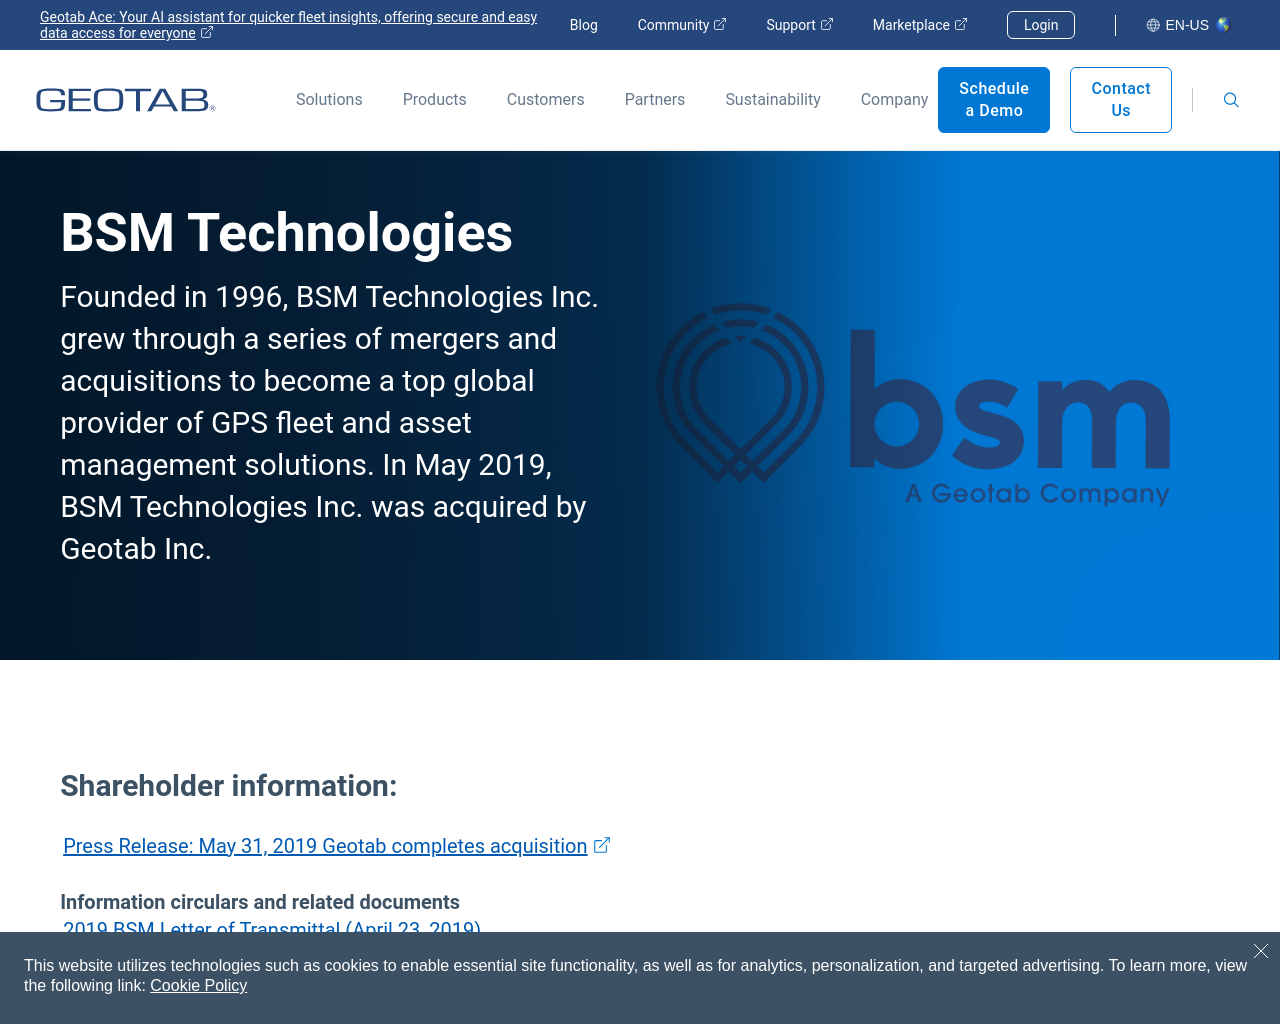 bsmtechnologies.com